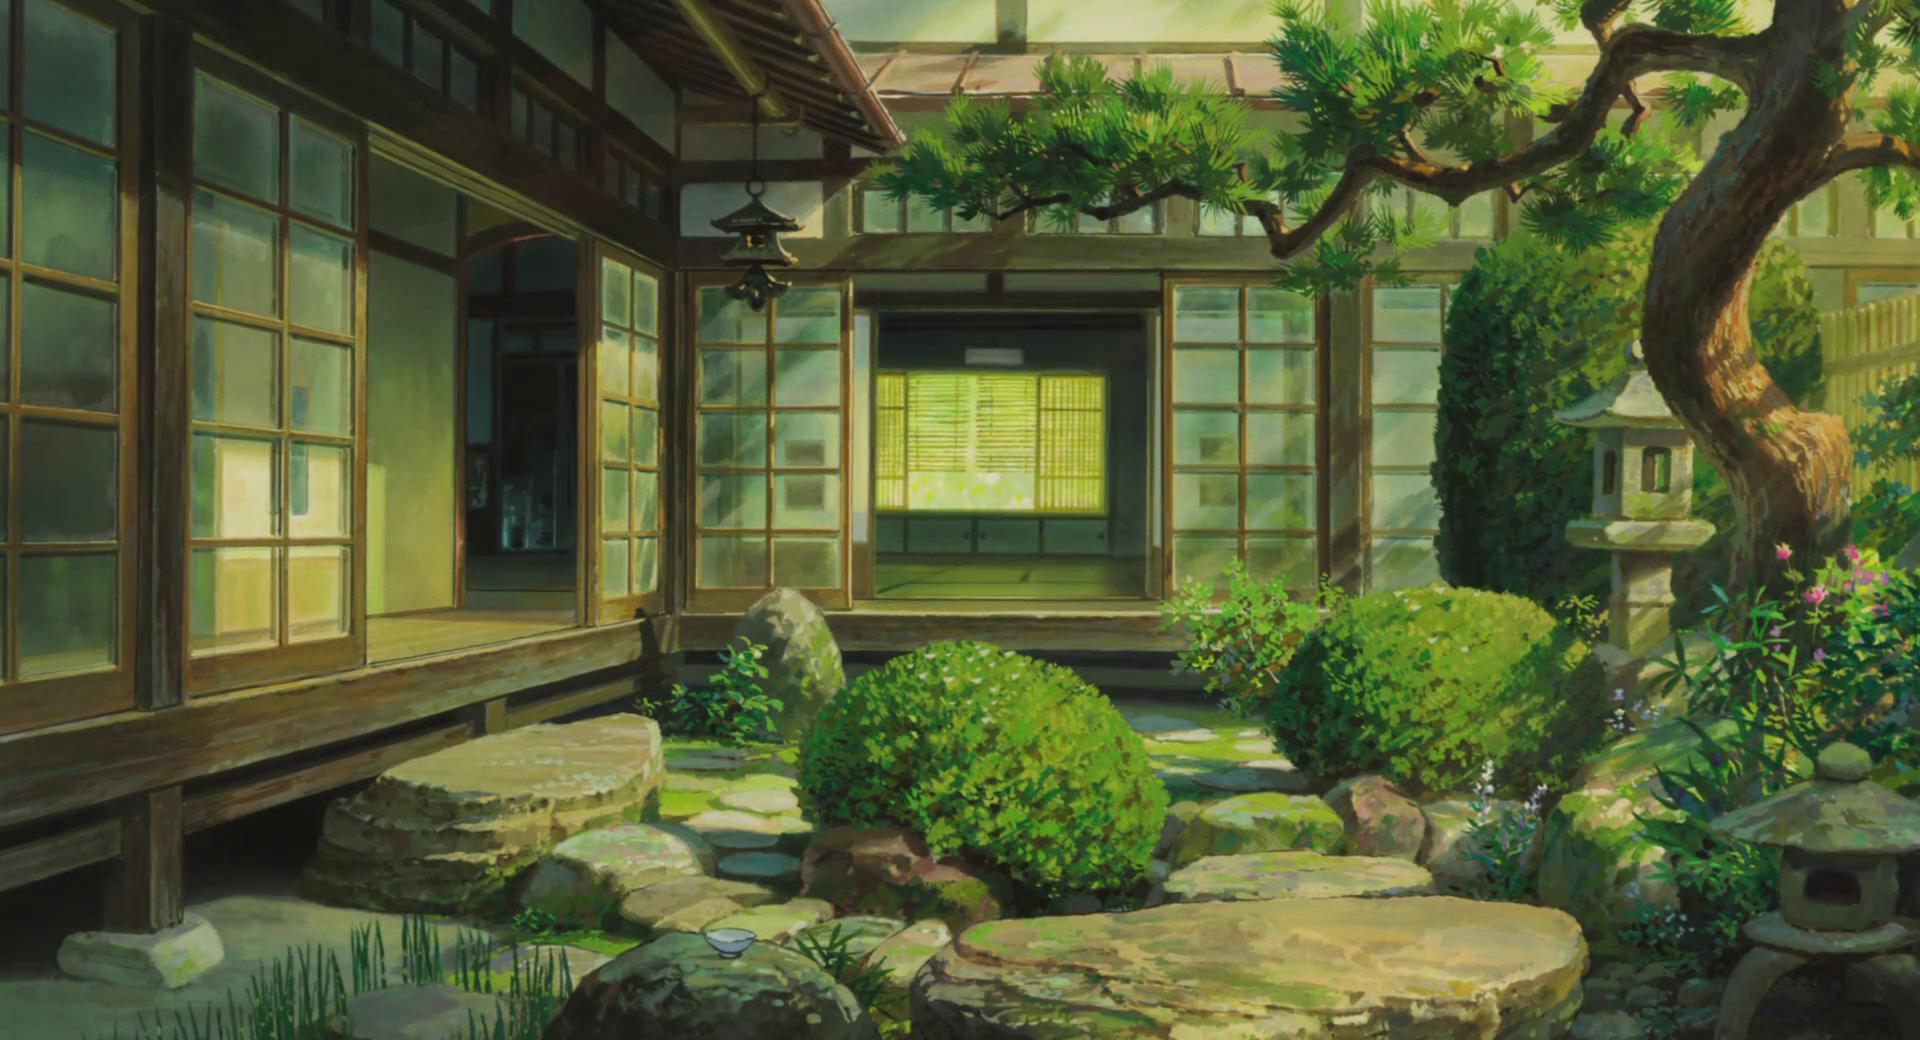 Anime 1920x1040 The Wind Rises Hayao Miyazaki anime film stills Japanese Garden Japan artwork